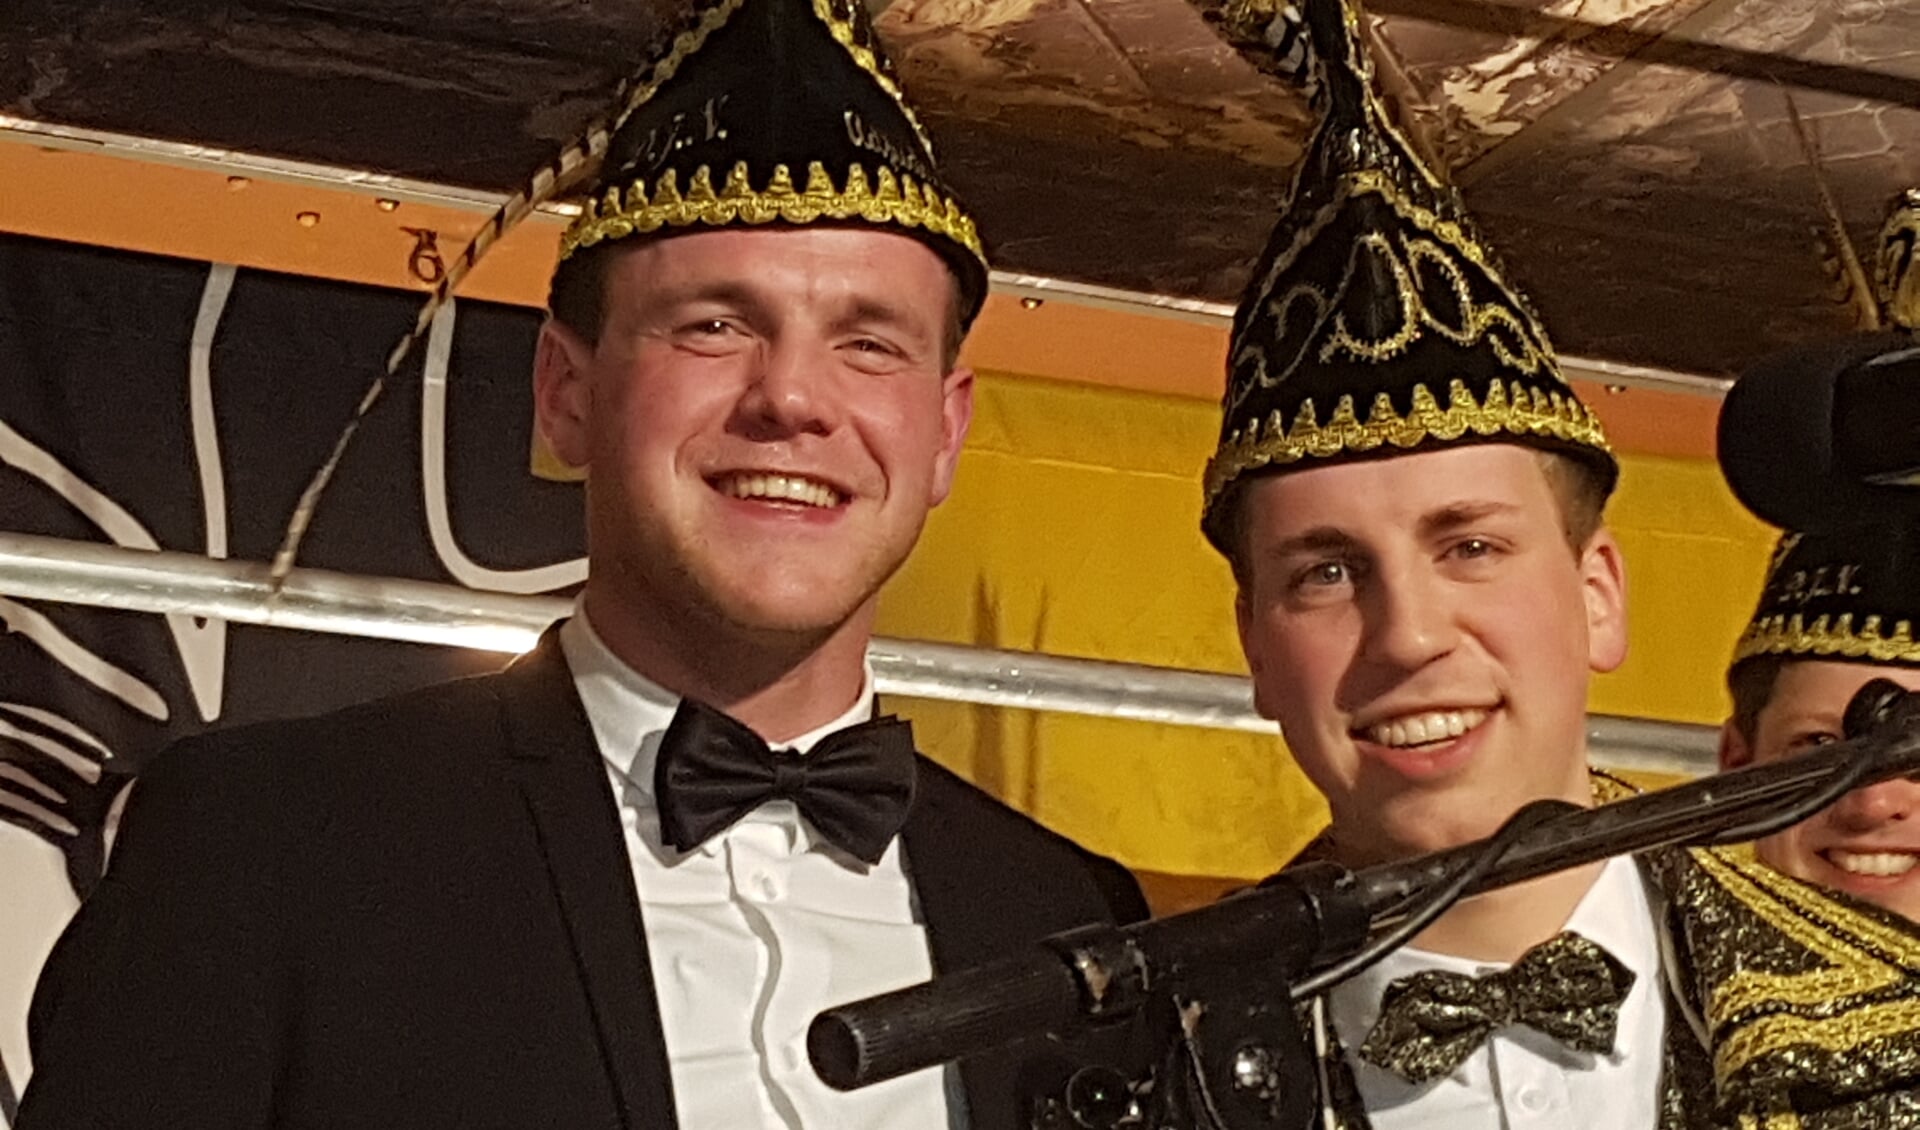 Prins Bram te Brake (r) en adjudant Pieter ten Have zijn de nieuwe hoogheden van de Jonge Nölepeters uit Lievelde. Foto: Kyra Broshuis